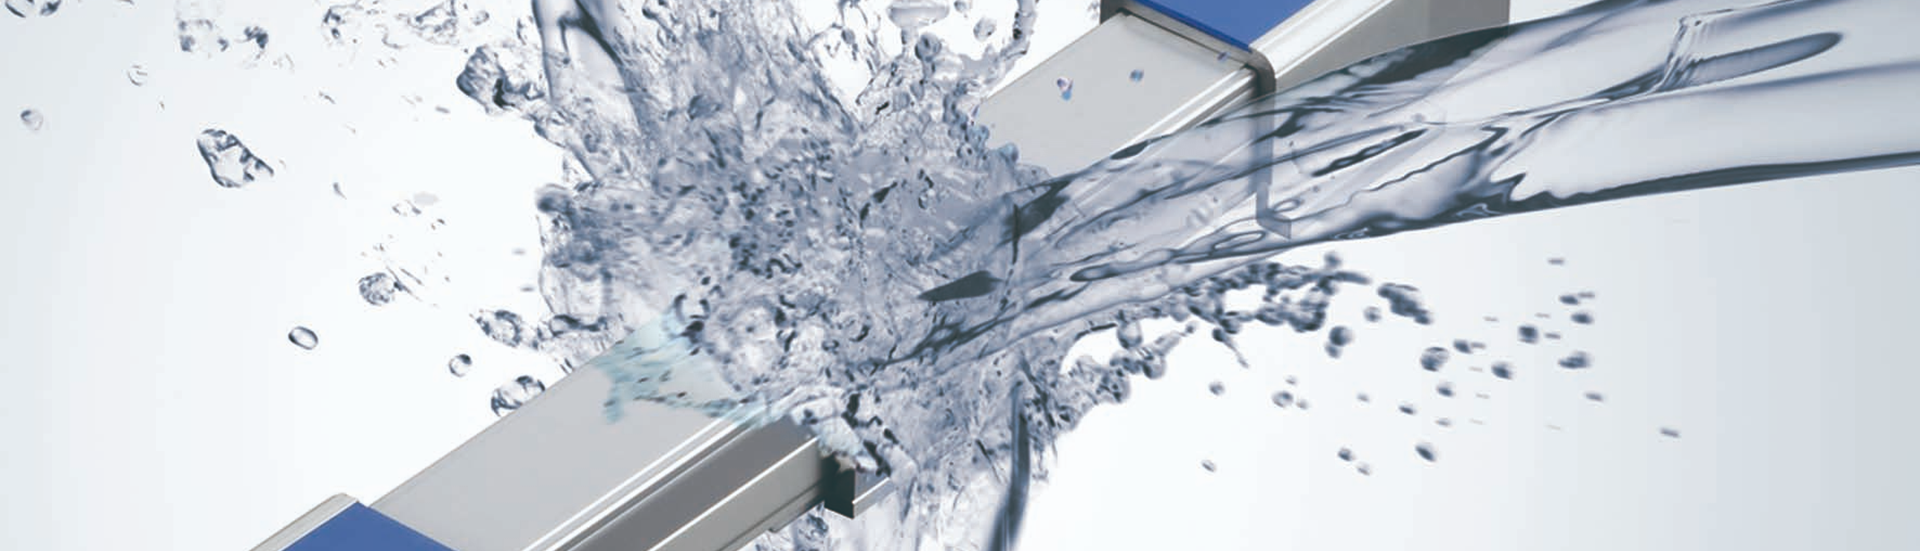 Topbillede med næroptagelse af vaskbar aktuator i vand